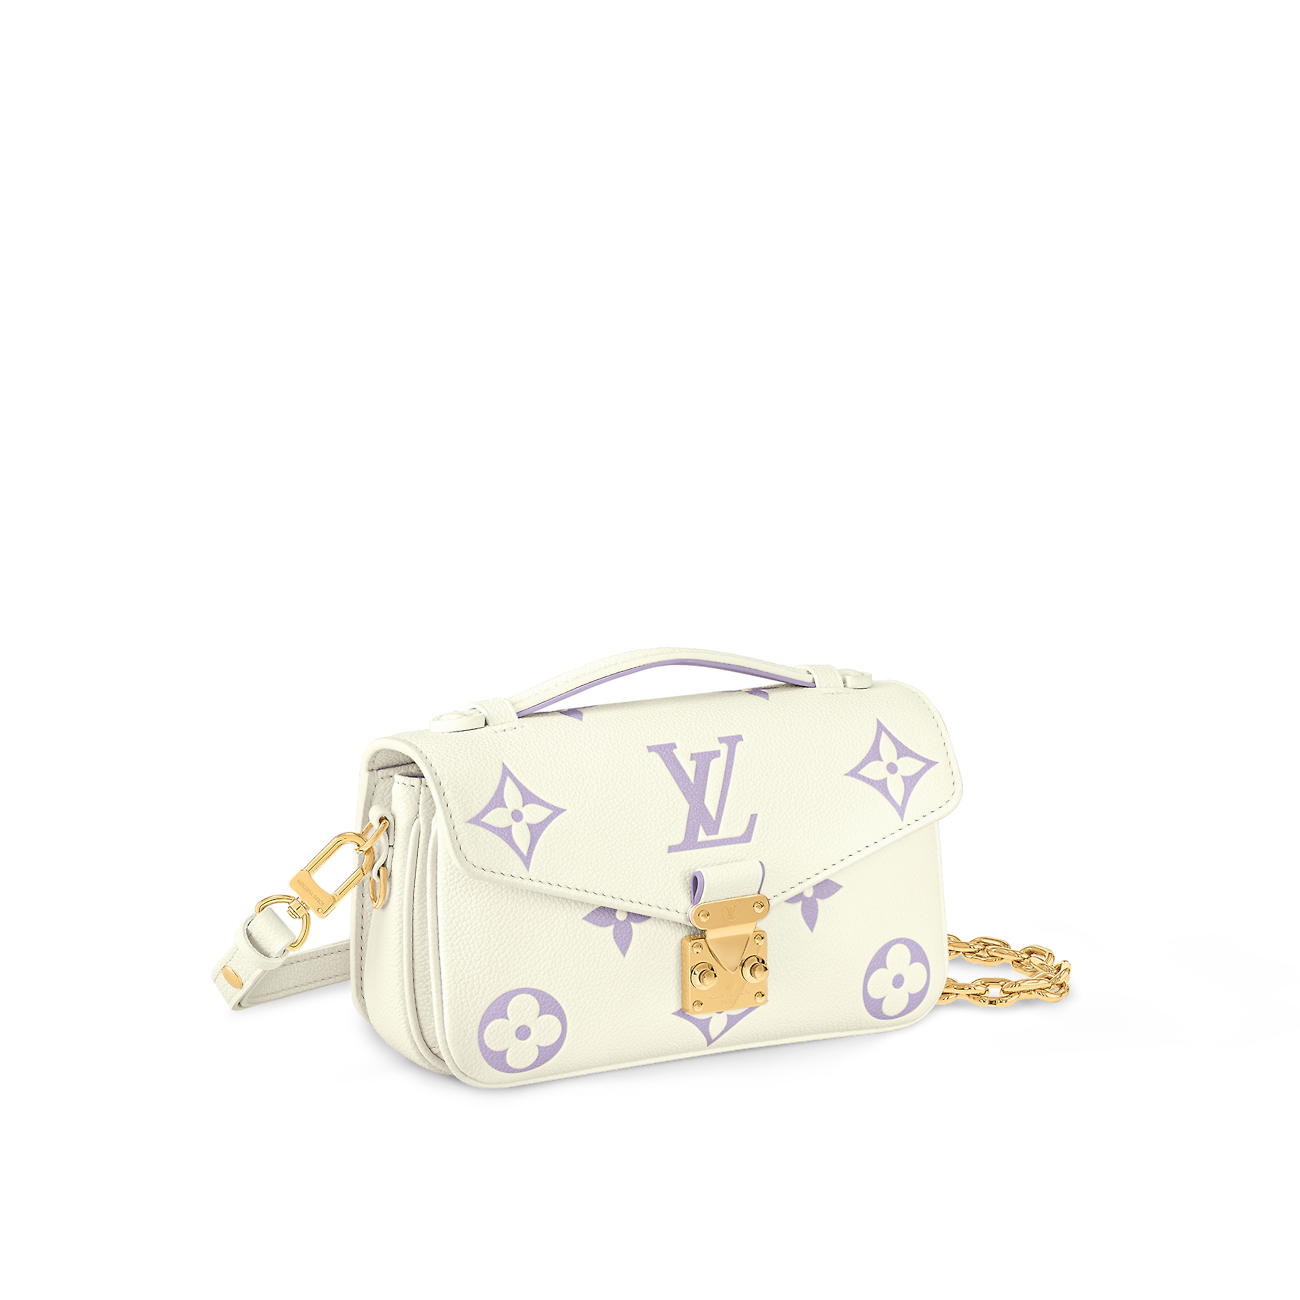 LOUIS VUITTON Pochette Métis East West Latte/Bubble Tea Bicolor Monogram Empreinte Leather Handbags 